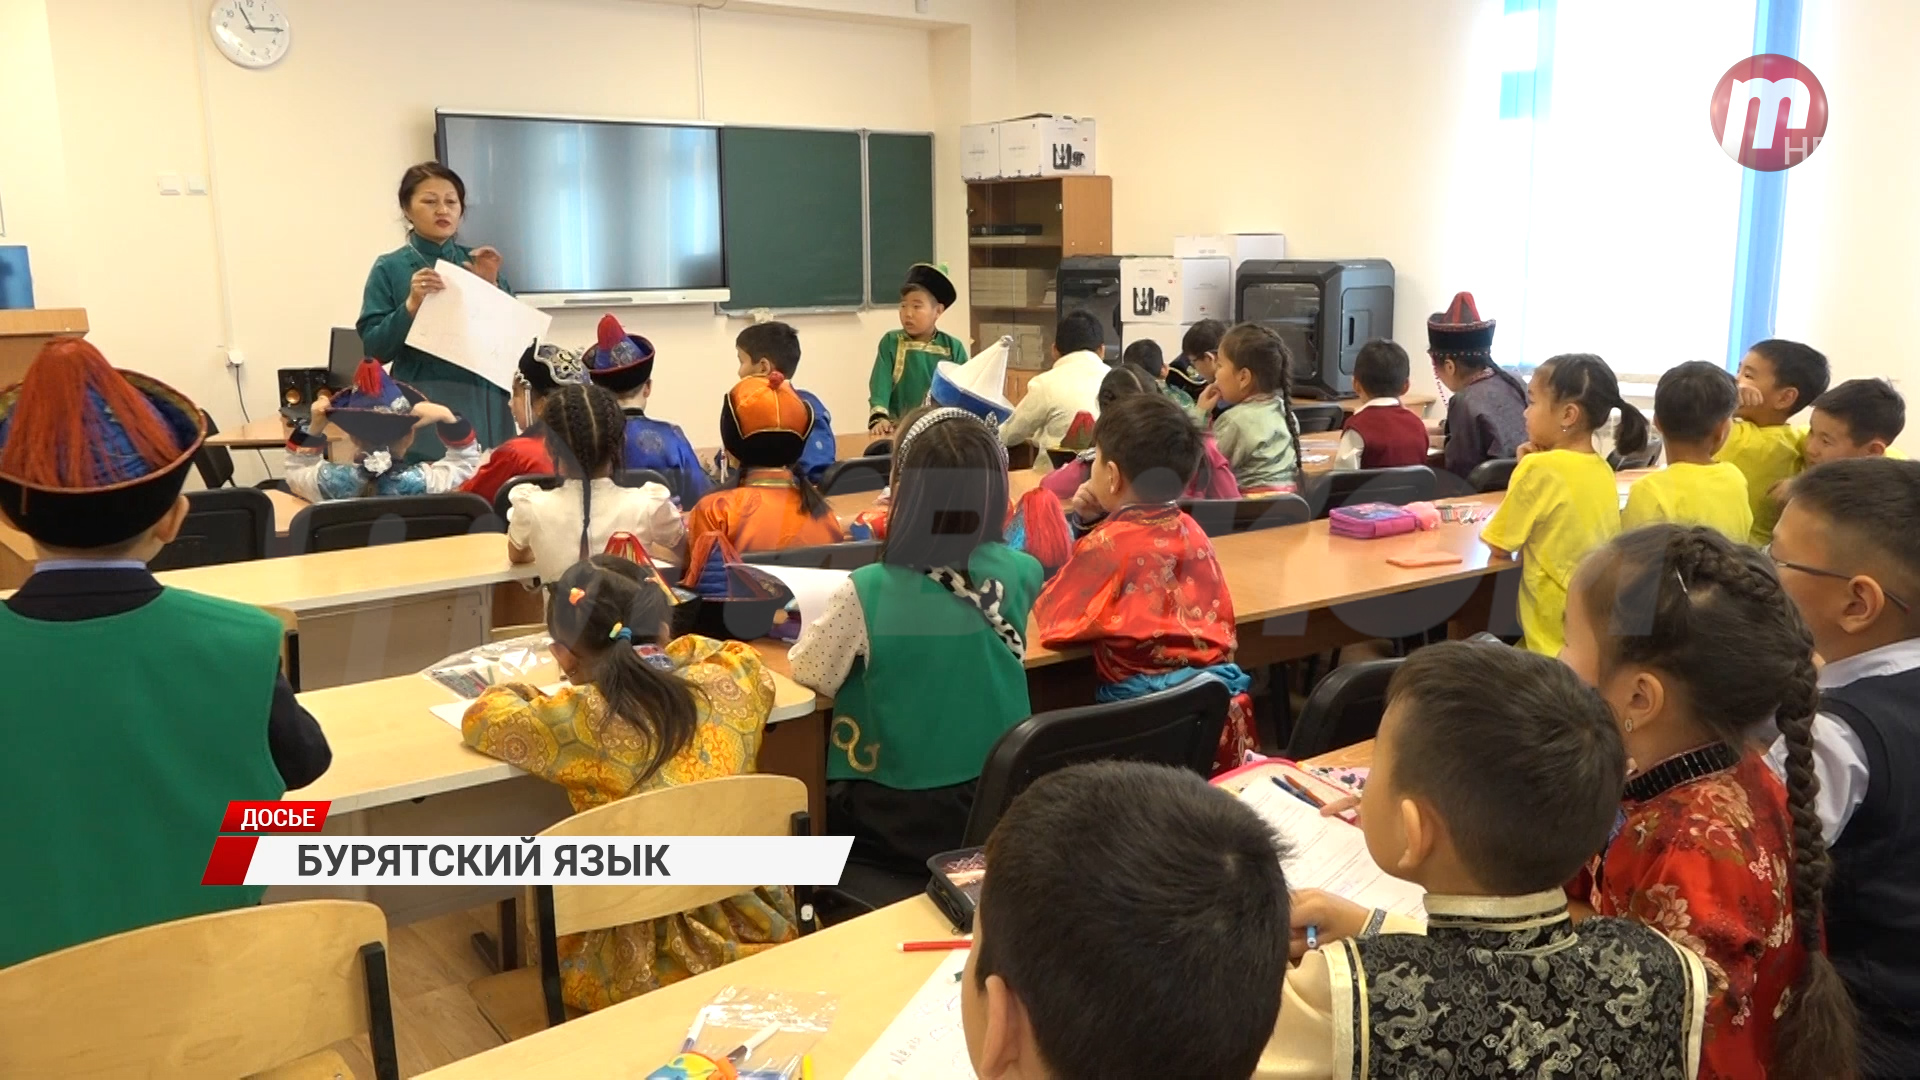 В Улан-Удэ сотрудники администрации будут изучать бурятский вместе с горожанами